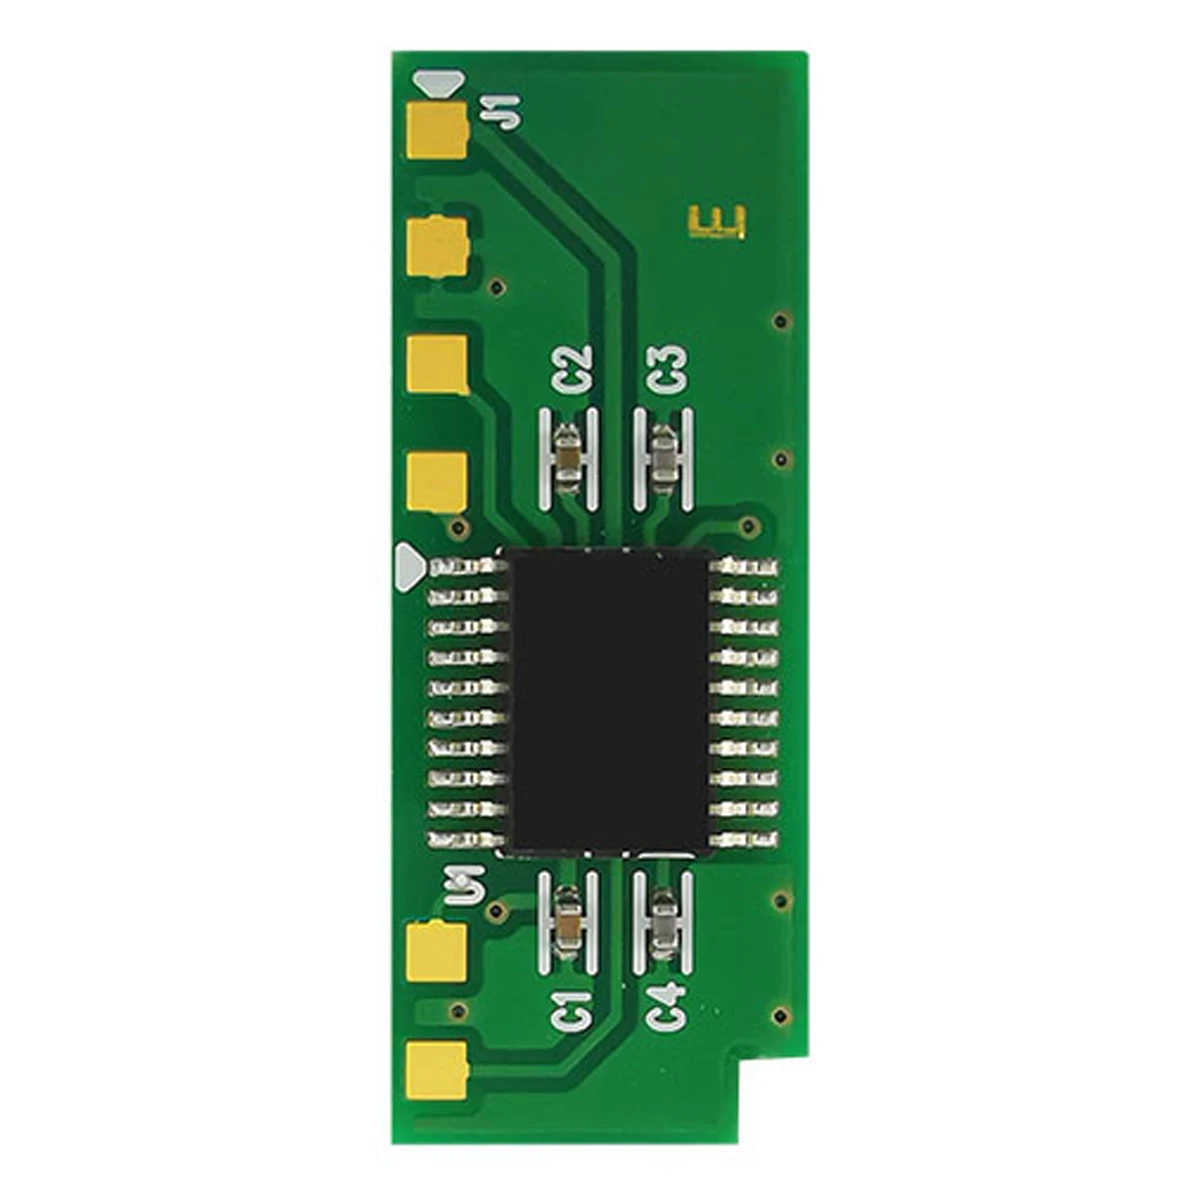 

Toner Chip for Pantum M 6206 M 6506 M 6556 M 6600 M 6606 M 6507 M 6607 PA-260E PB-260E PA-260EV PB-260EV PC-260 PC-260E PC-260EV